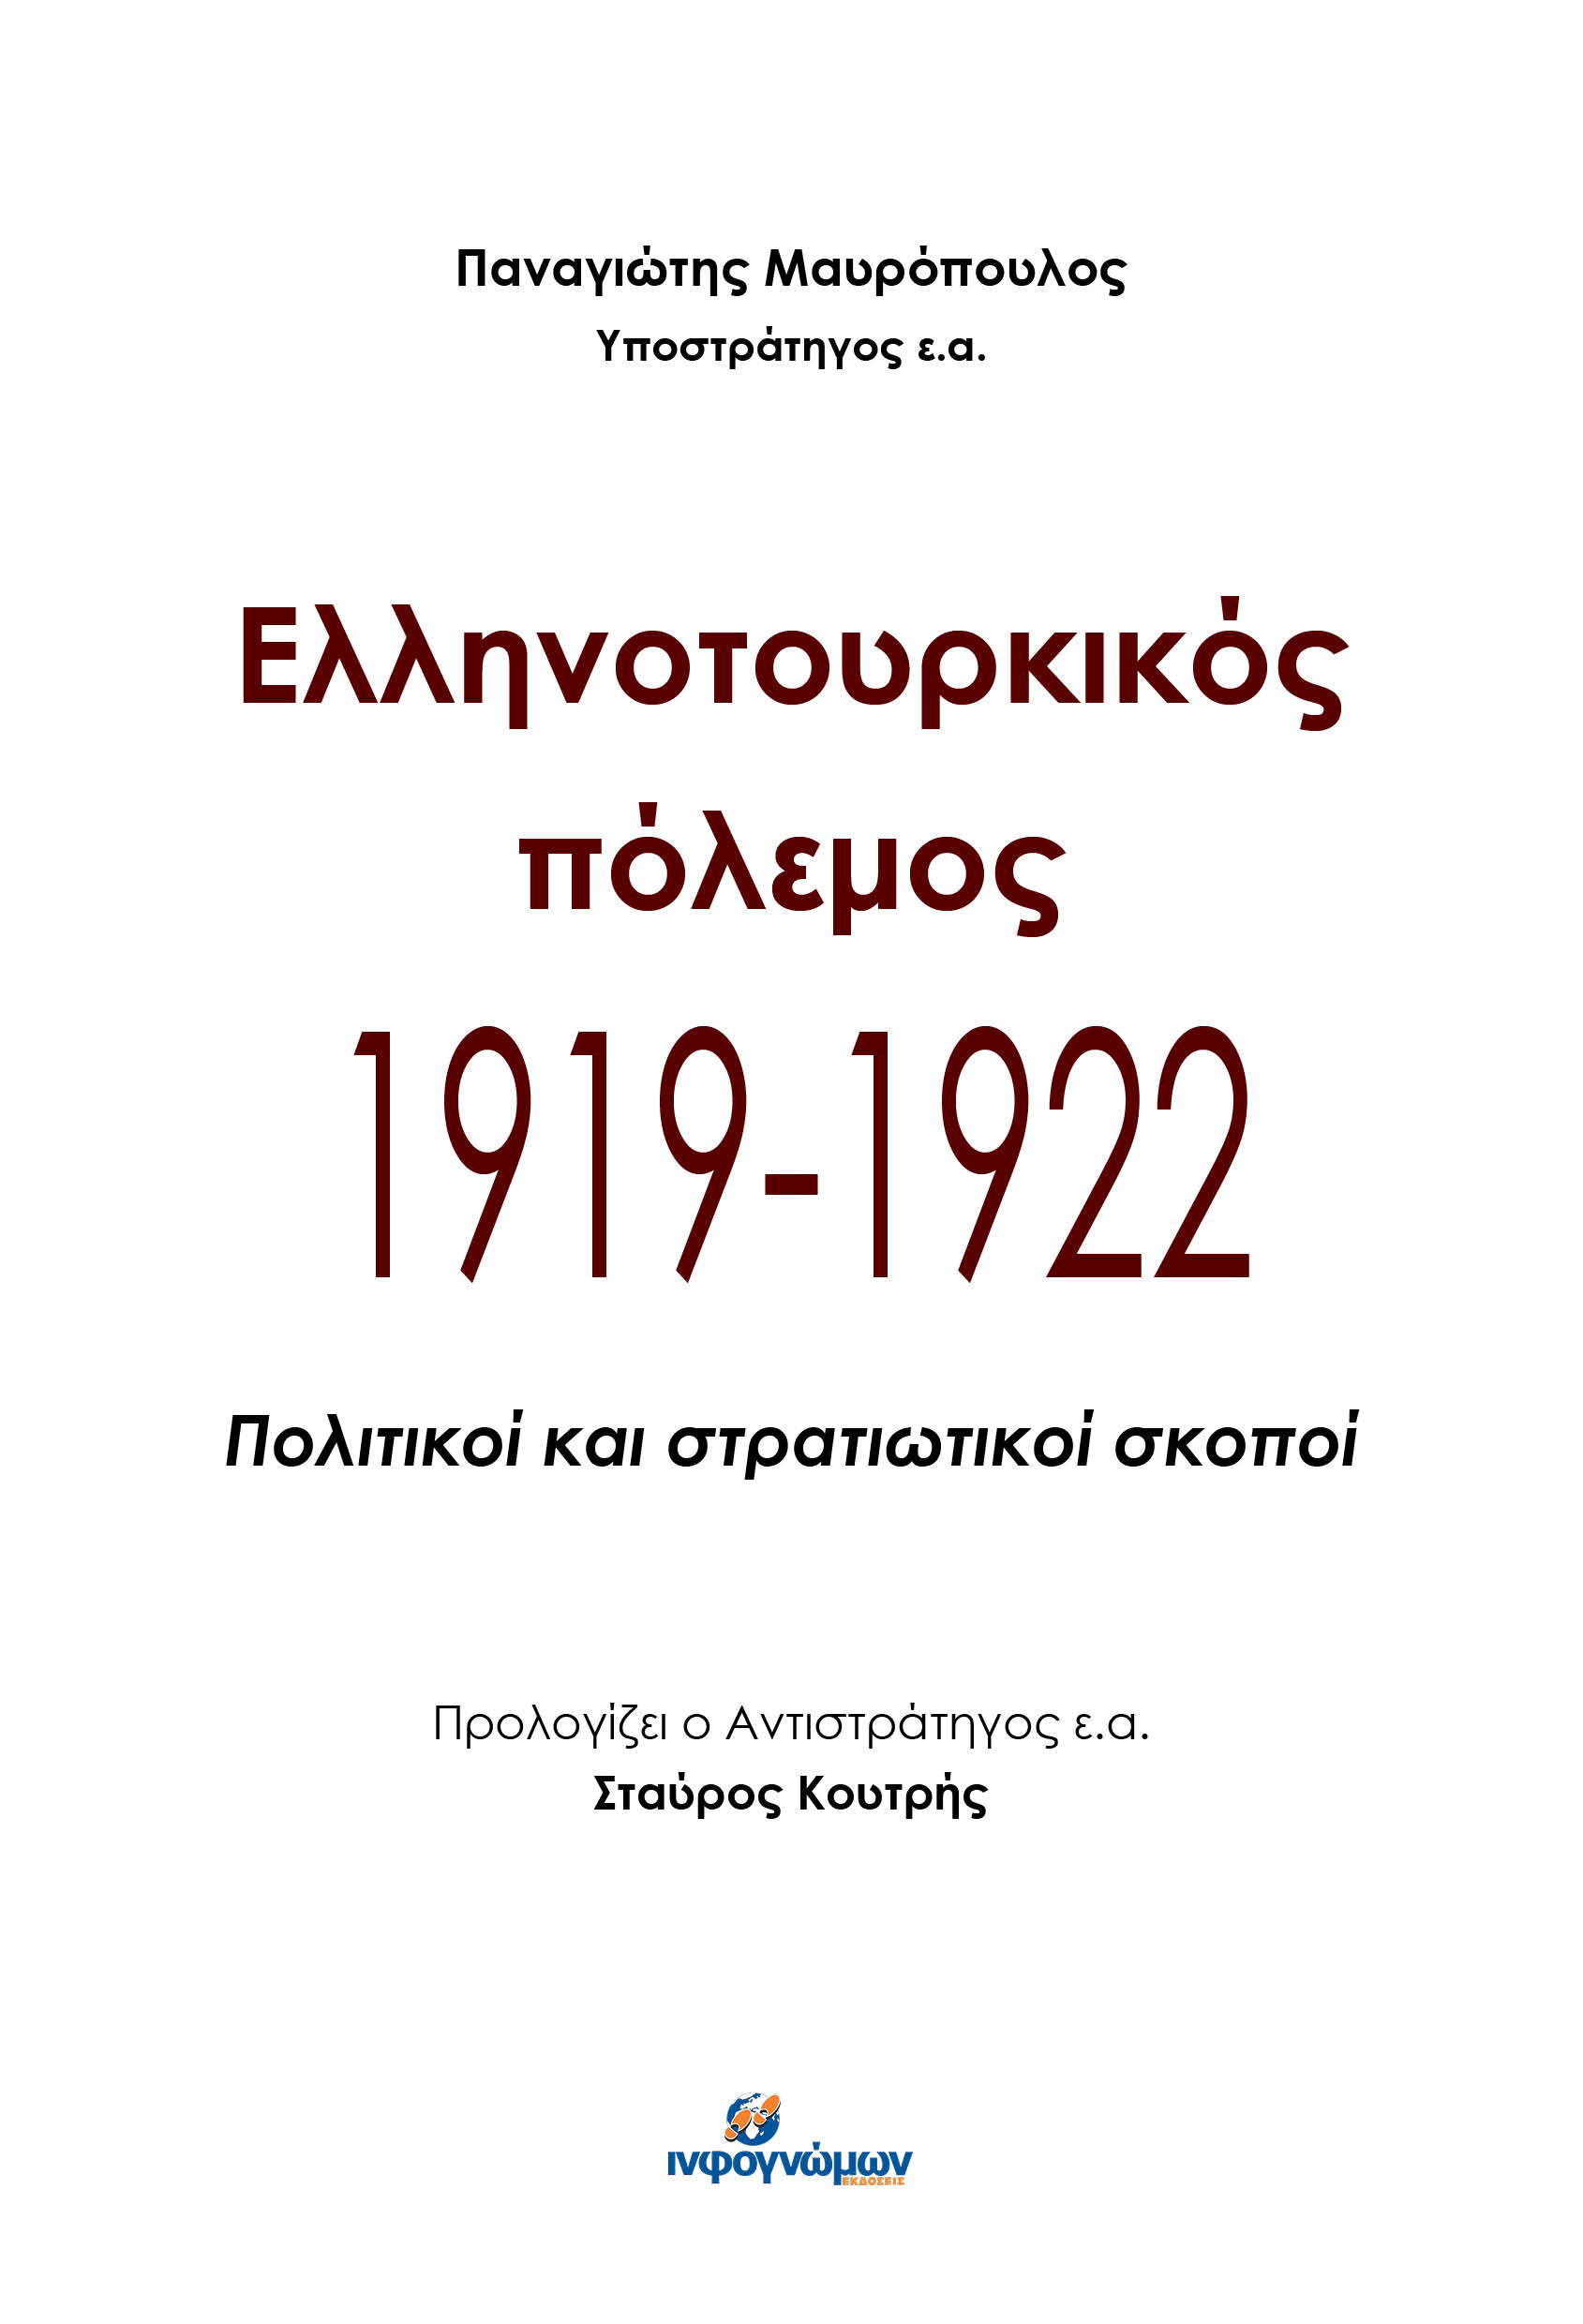 Νέα Έκδοση: “ΕΛΛΗΝΟΤΟΥΡΚΙΚΟΣ ΠΟΛΕΜΟΣ 1919-1922 – Πολιτικοί και στρατιωτικοί σκοποί”, του Παναγιώτη Μαυρόπουλου